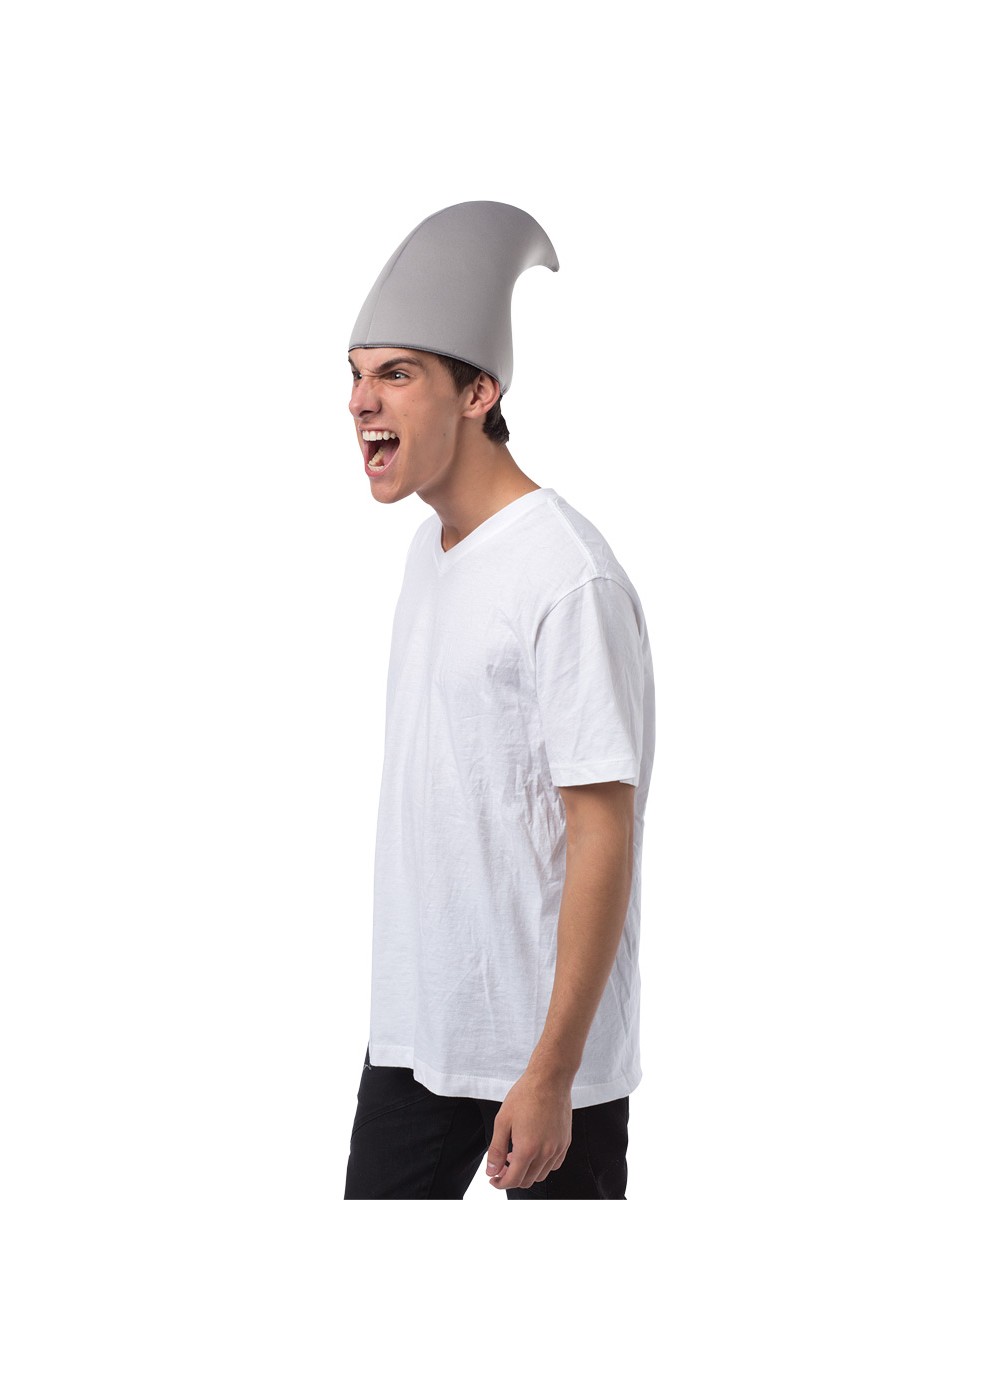 Shark Fin Hat